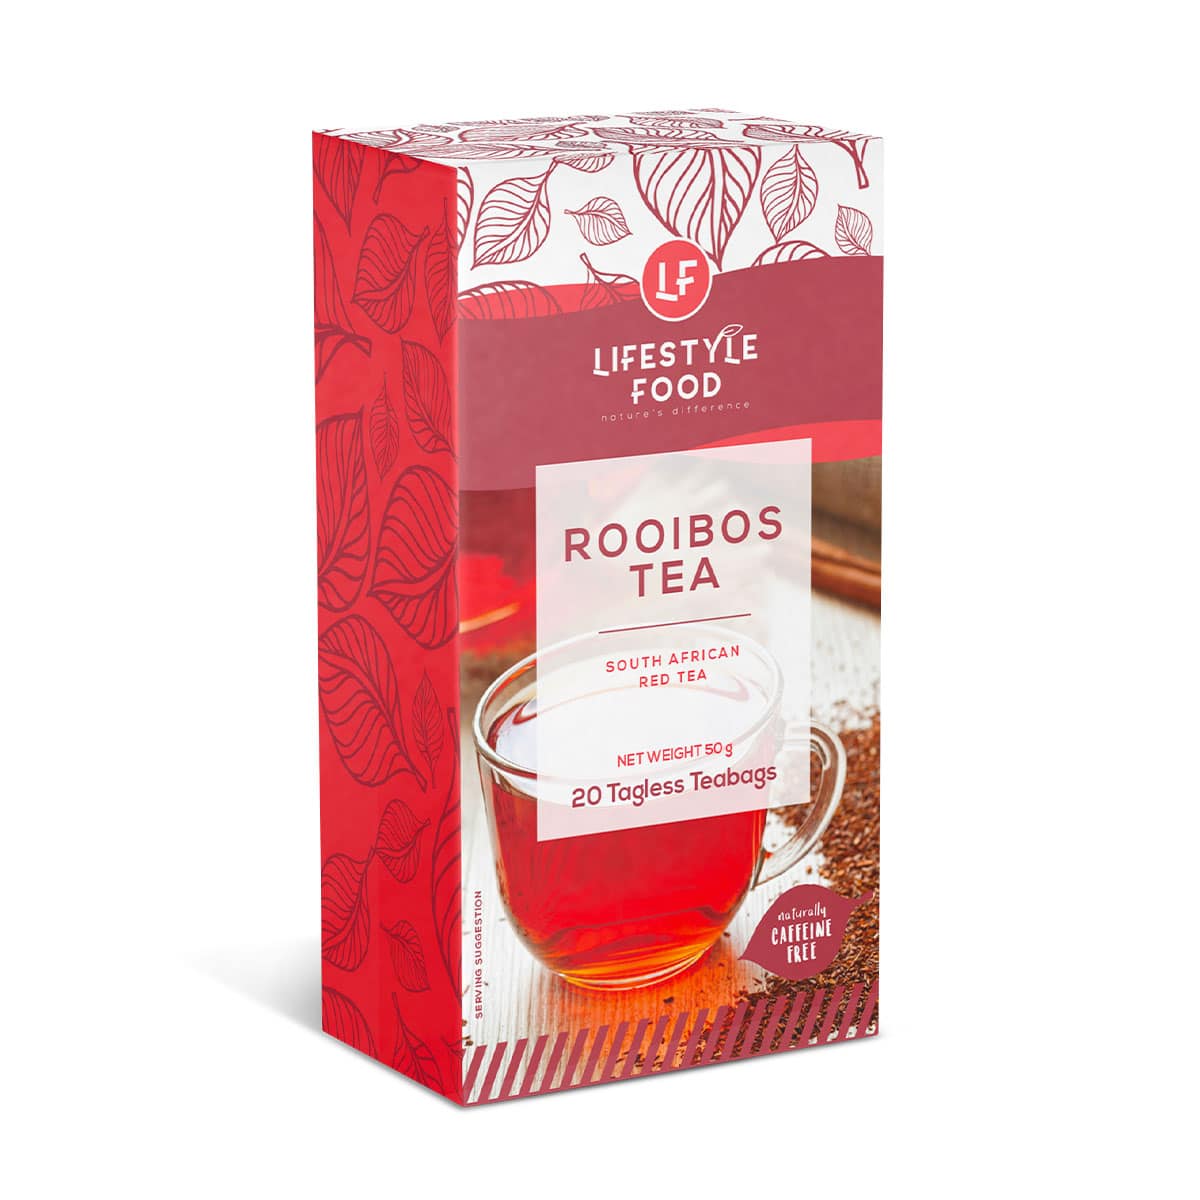 Lifestyle Food Rooibos Tea - 20 Tagless Teabags